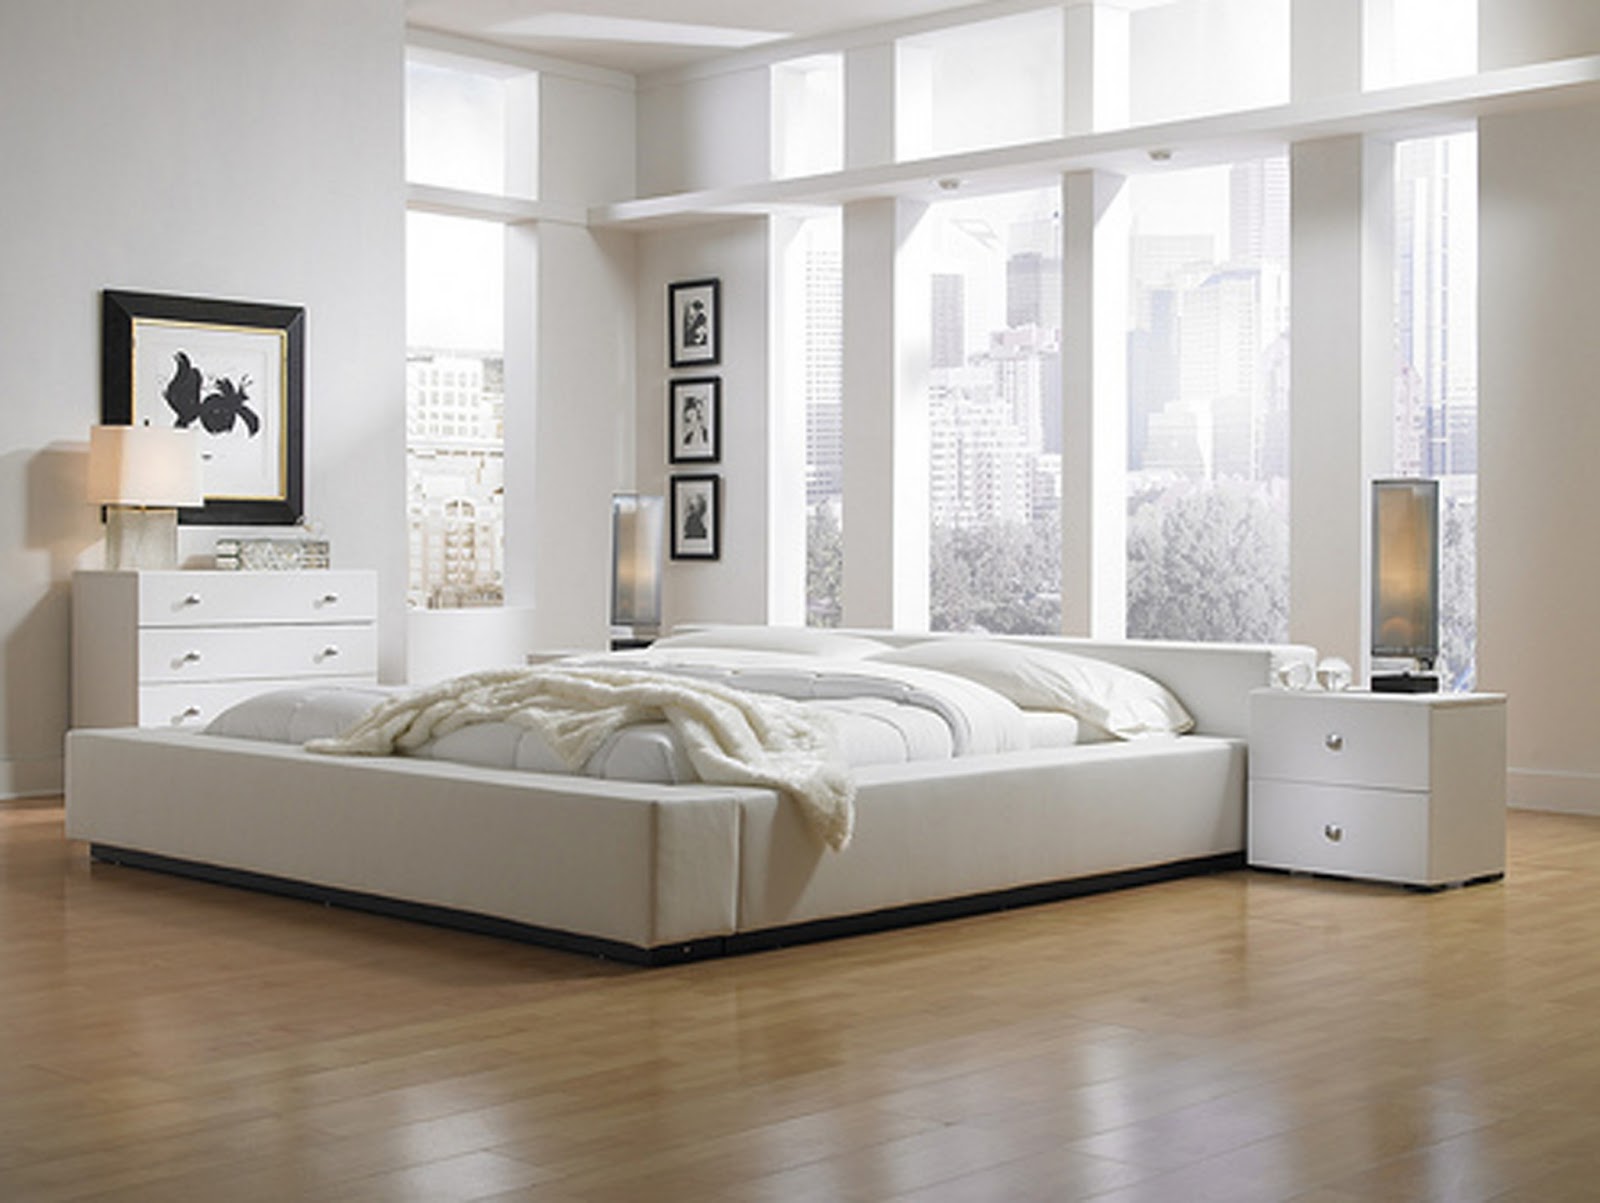 free modern bedroom furniture plans